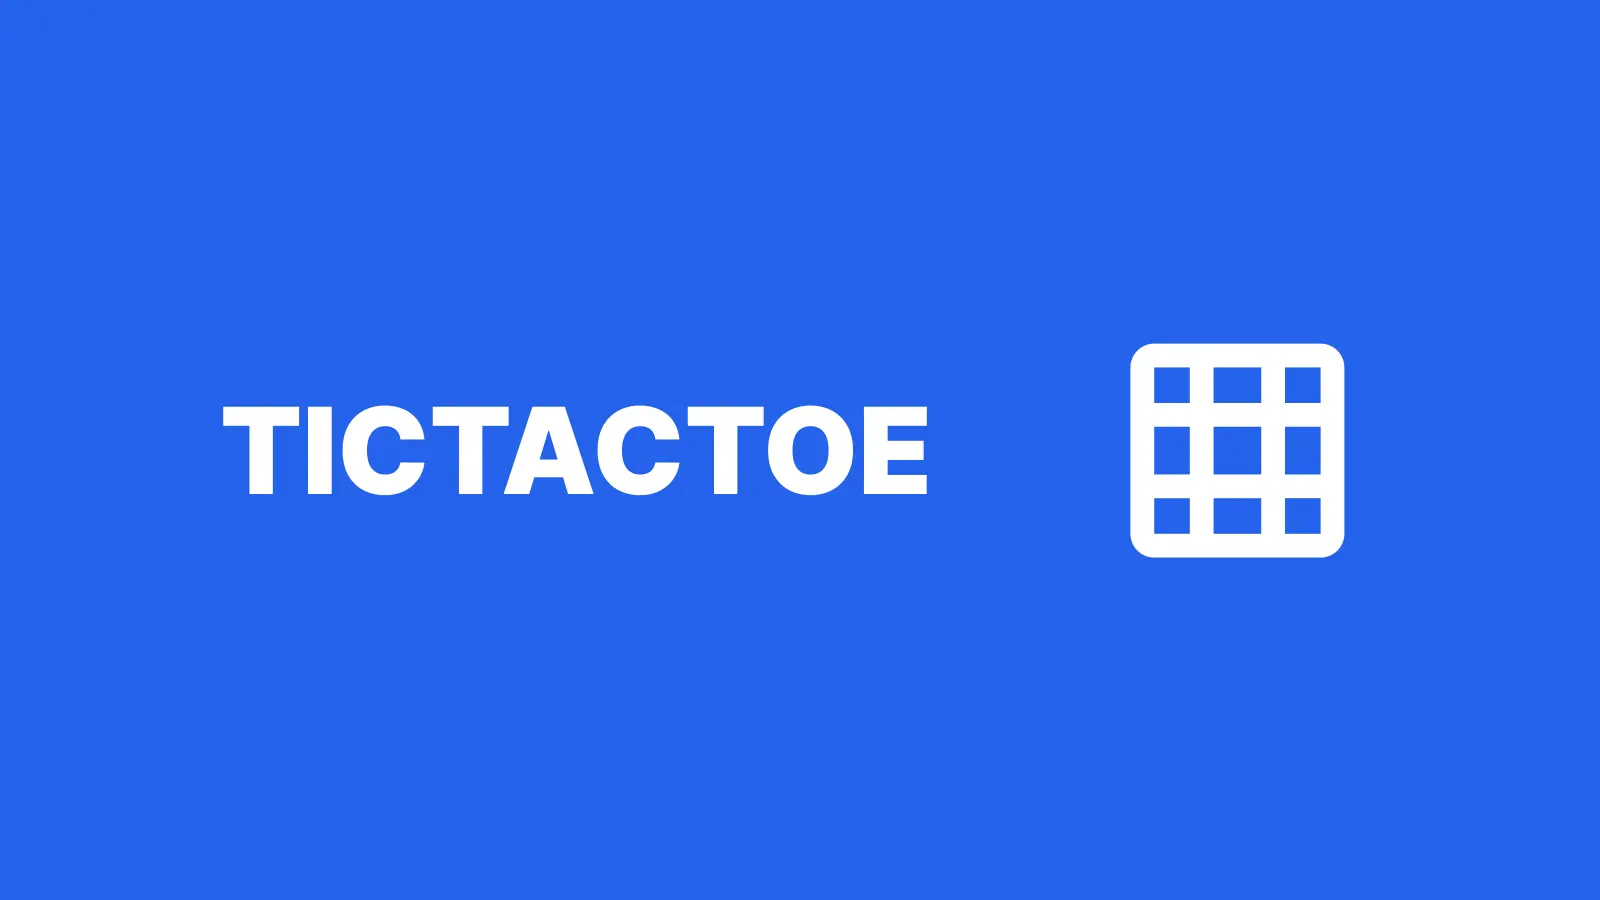 TicTacToe Client